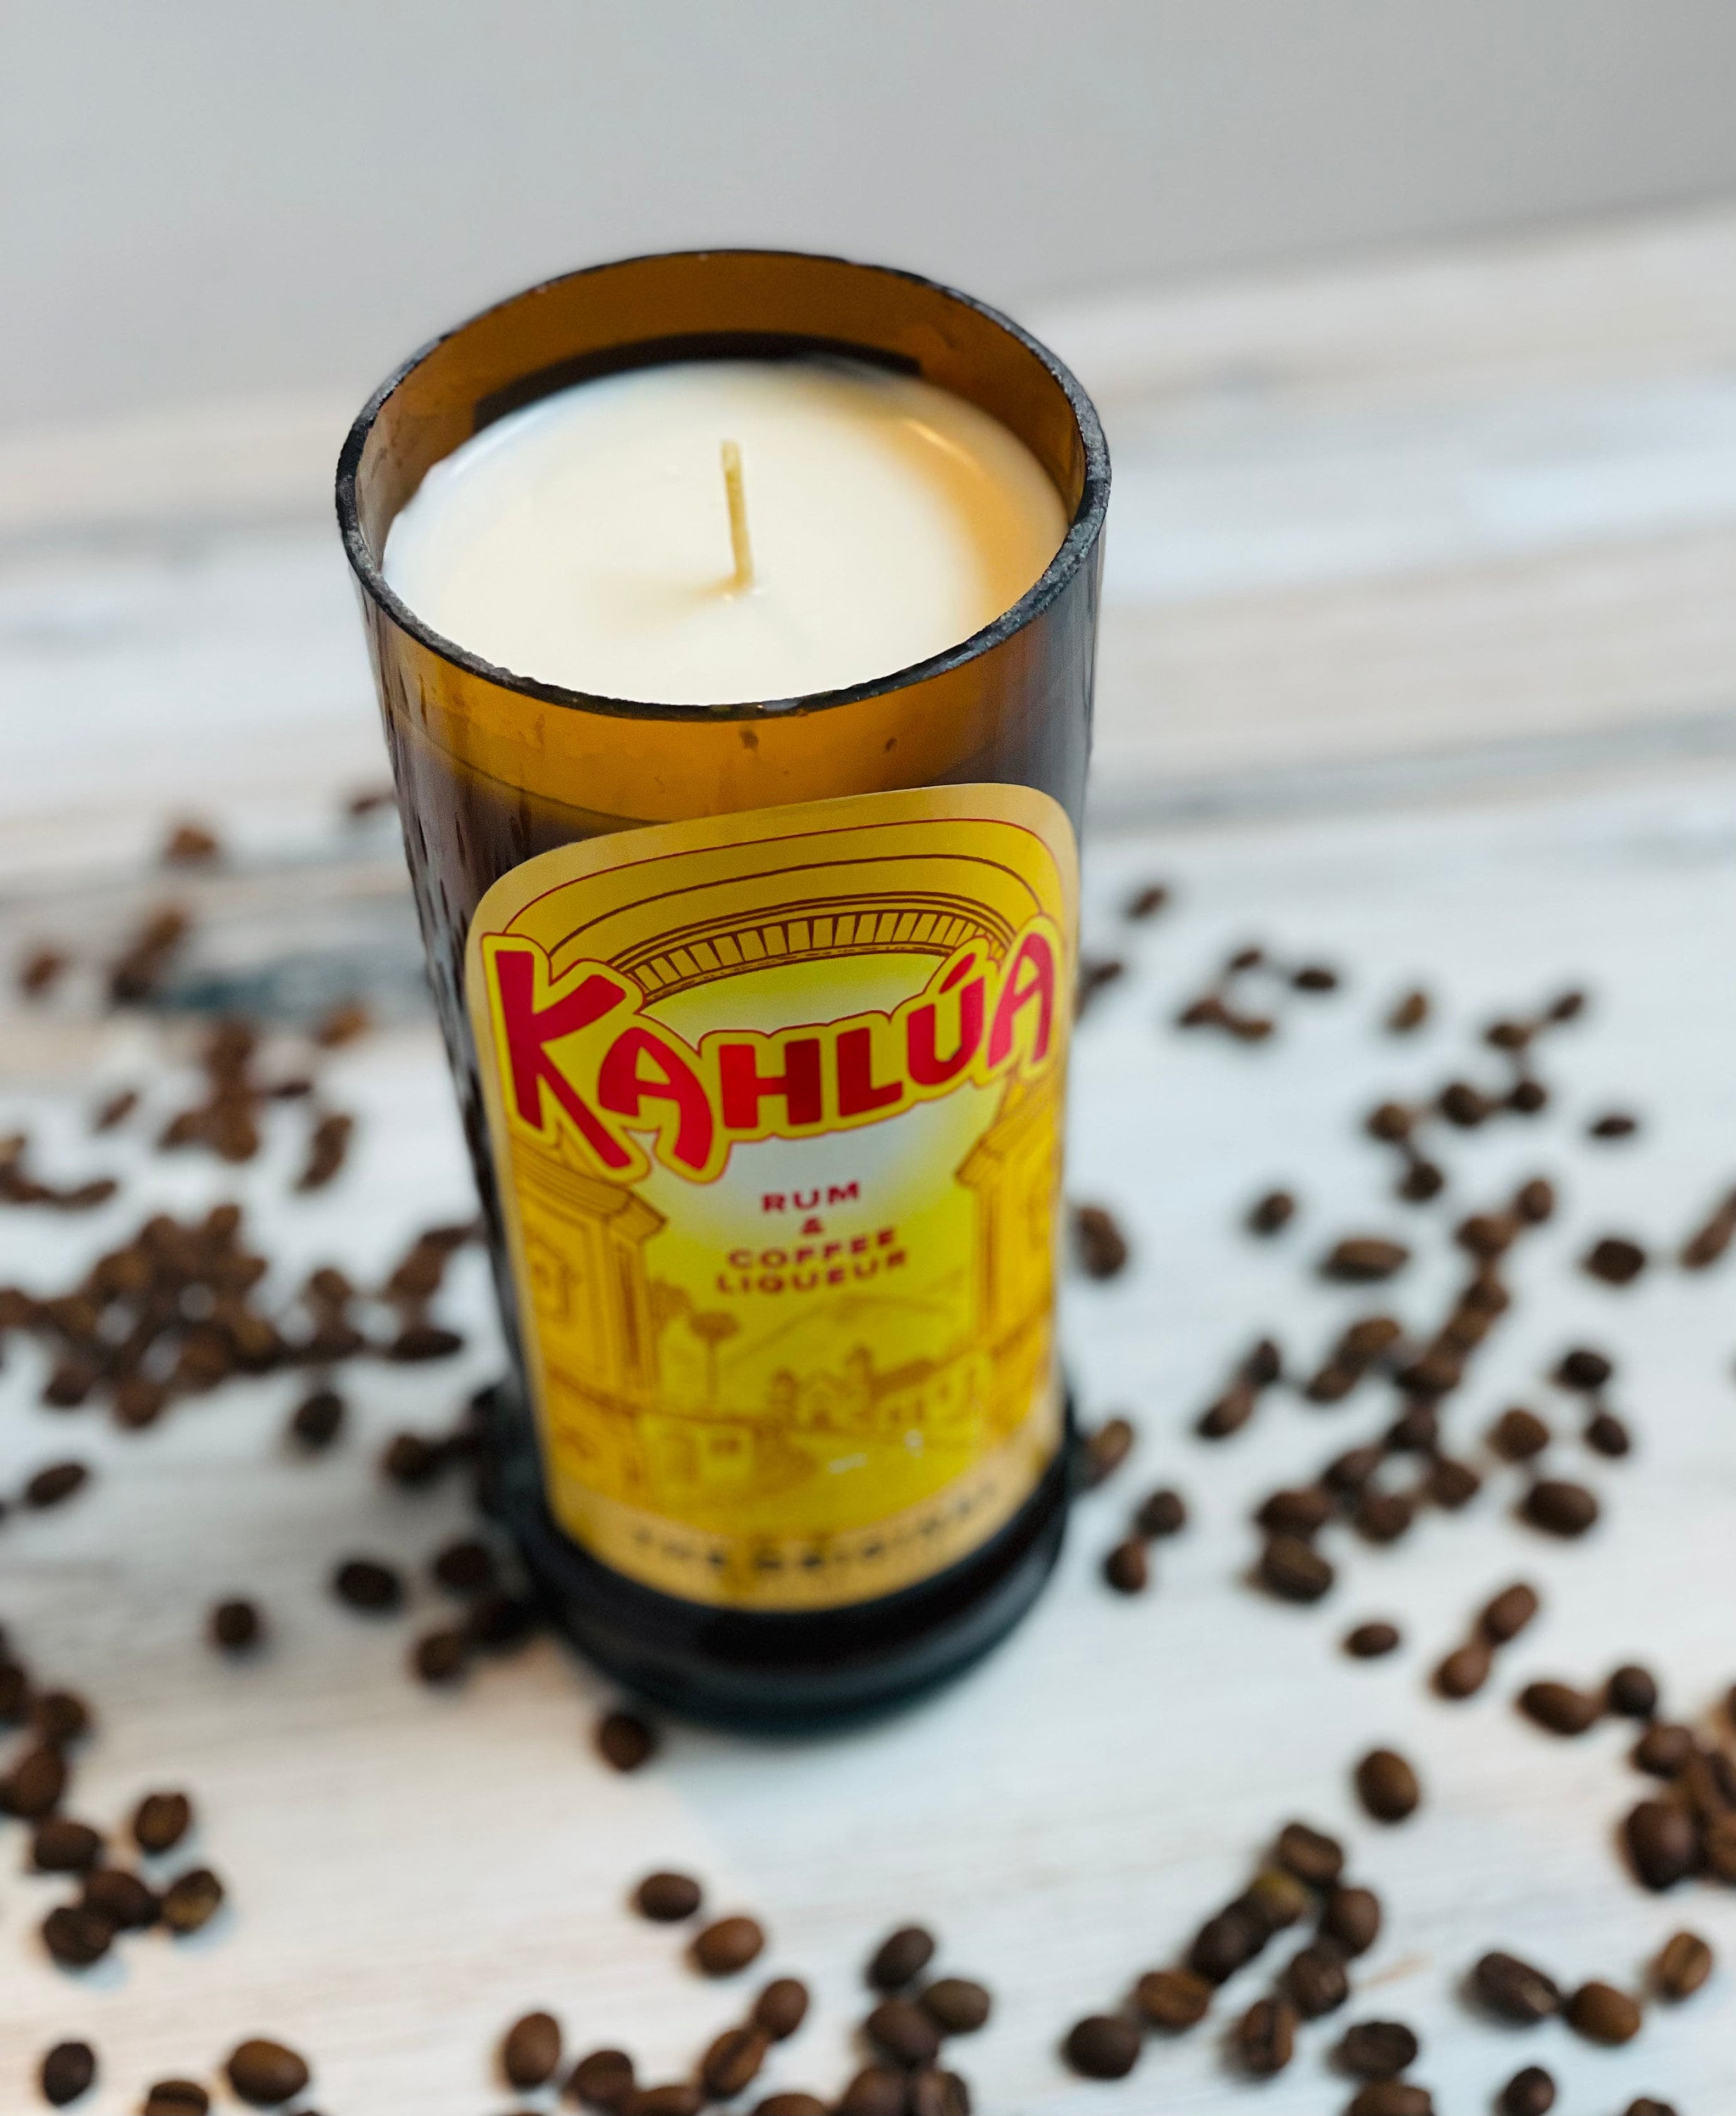 Kahlua Coffee Liqueur Bottle - Pro Sport Stickers